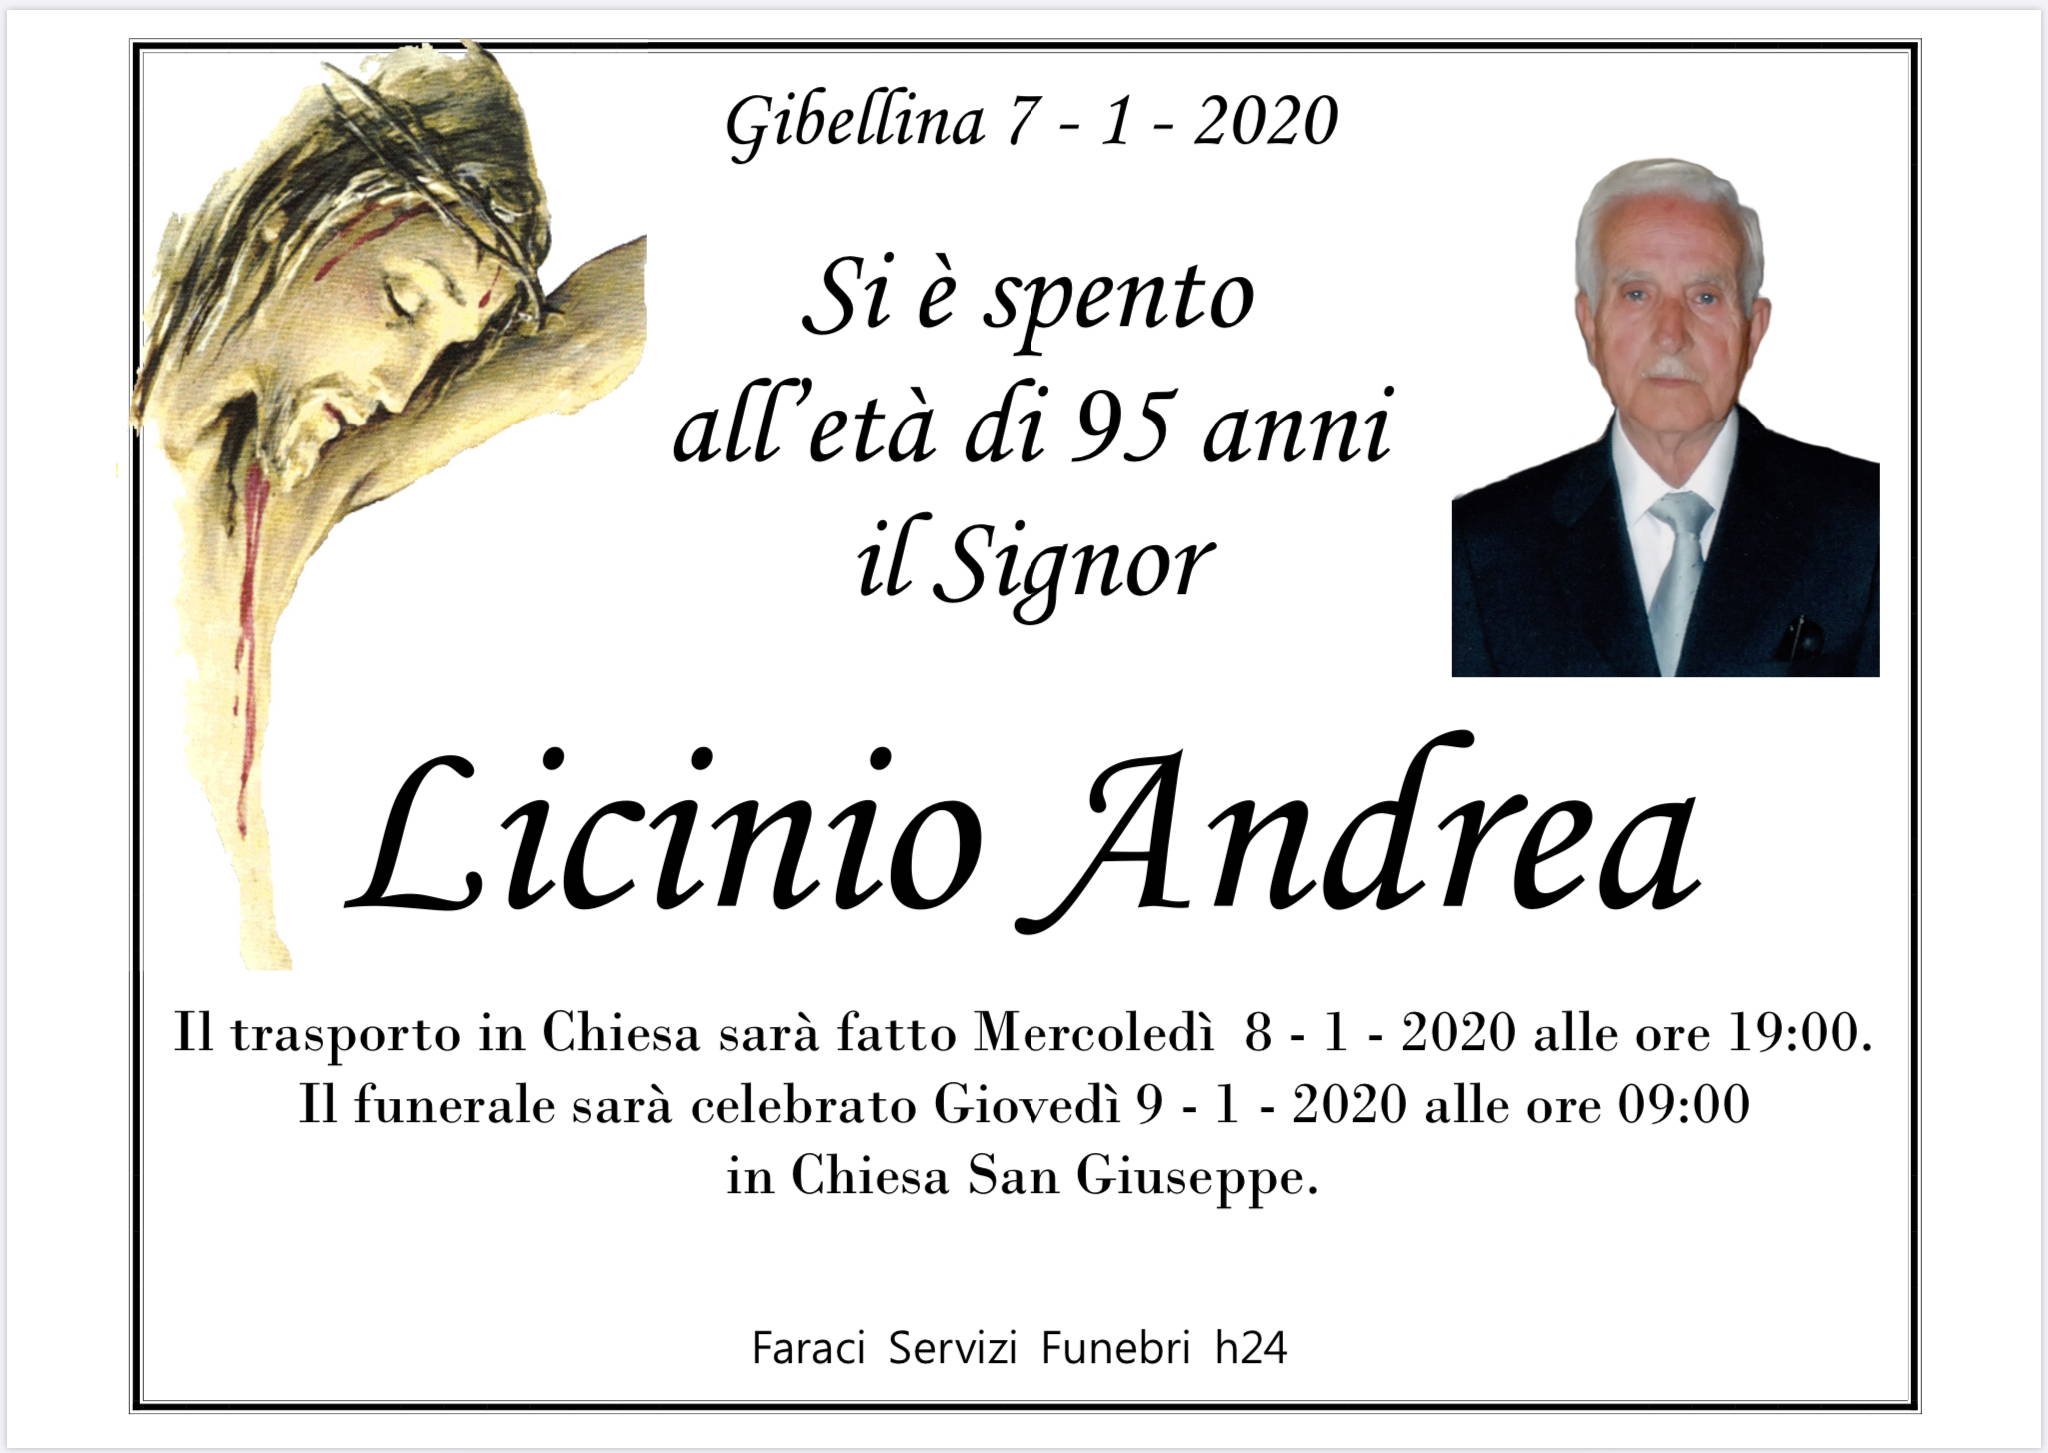 Andrea Licinio